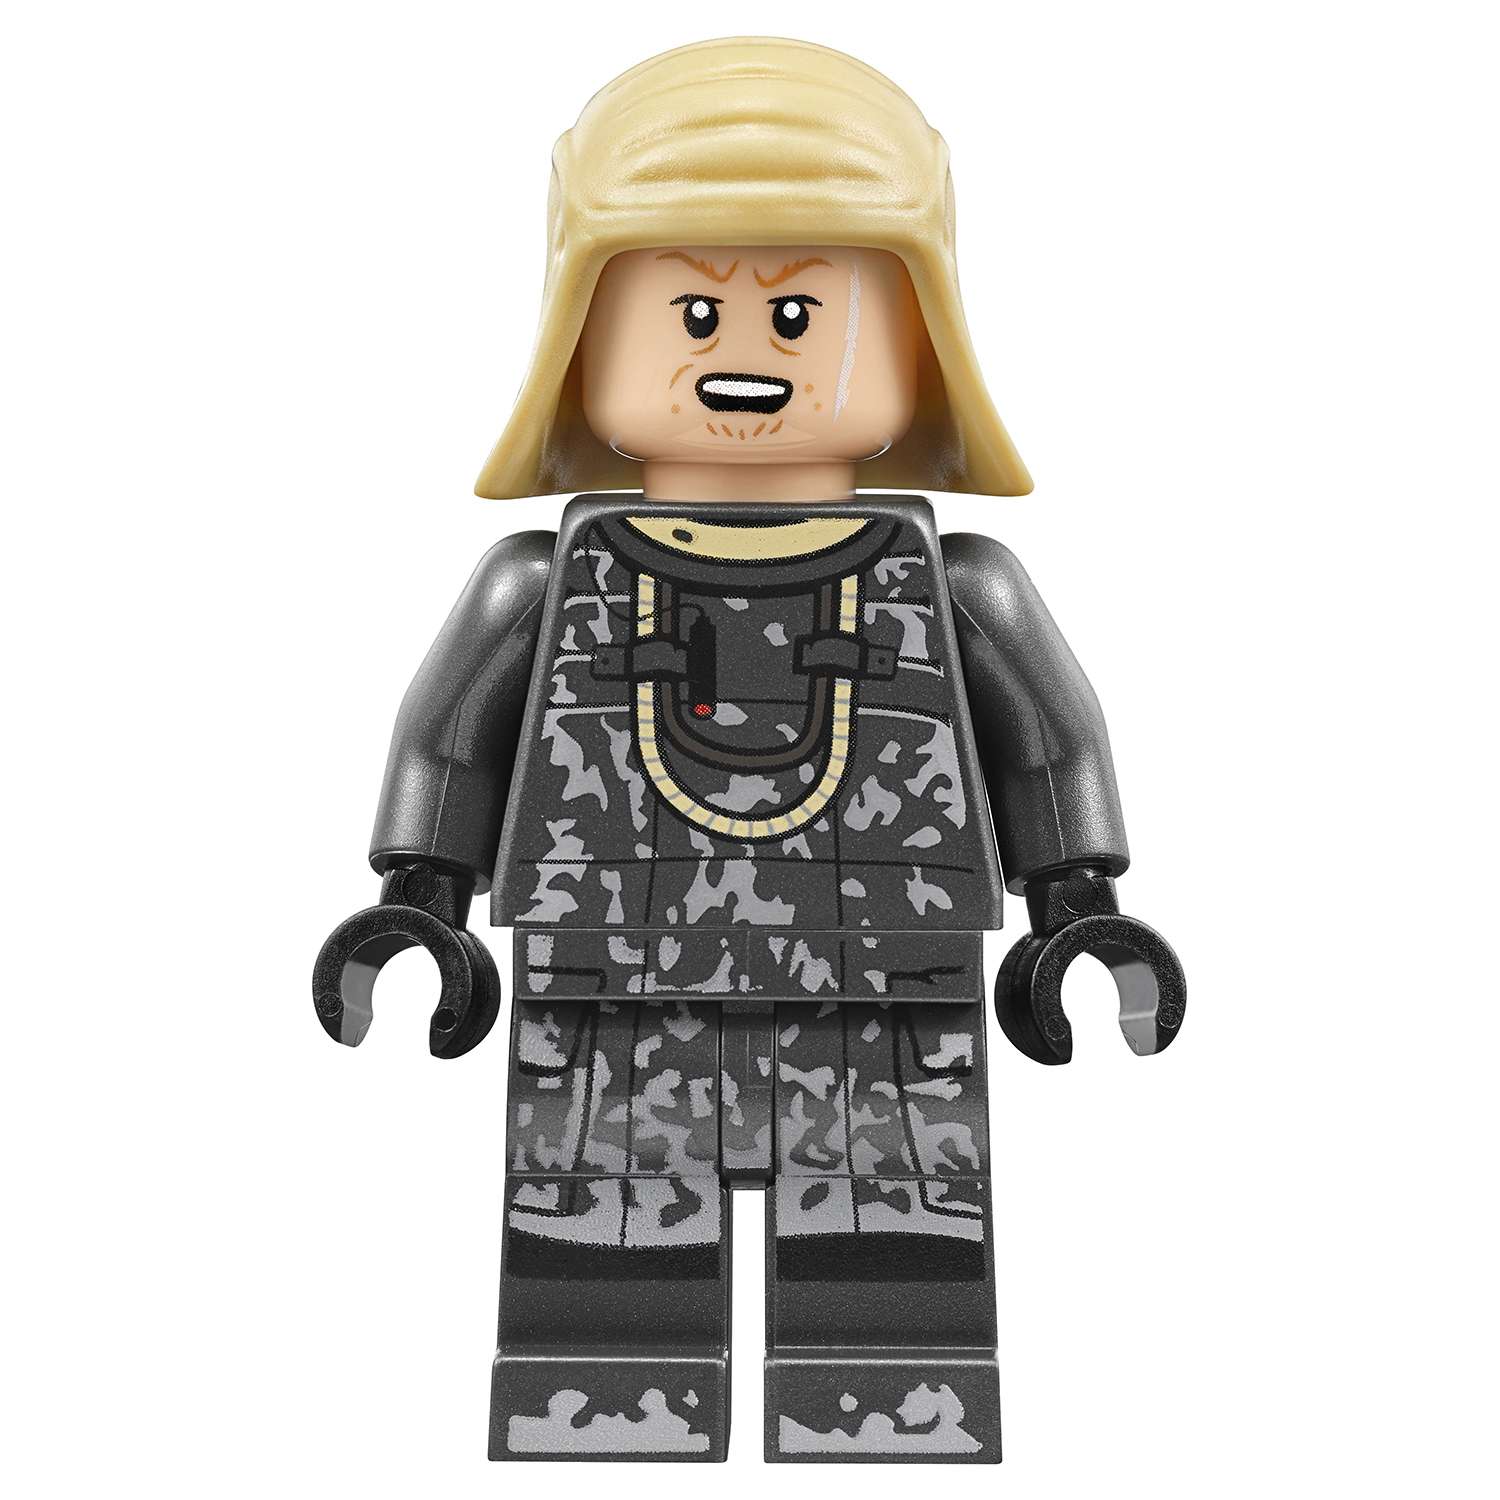 Конструктор LEGO Star Wars Спидер Молоха (75210) - фото 16